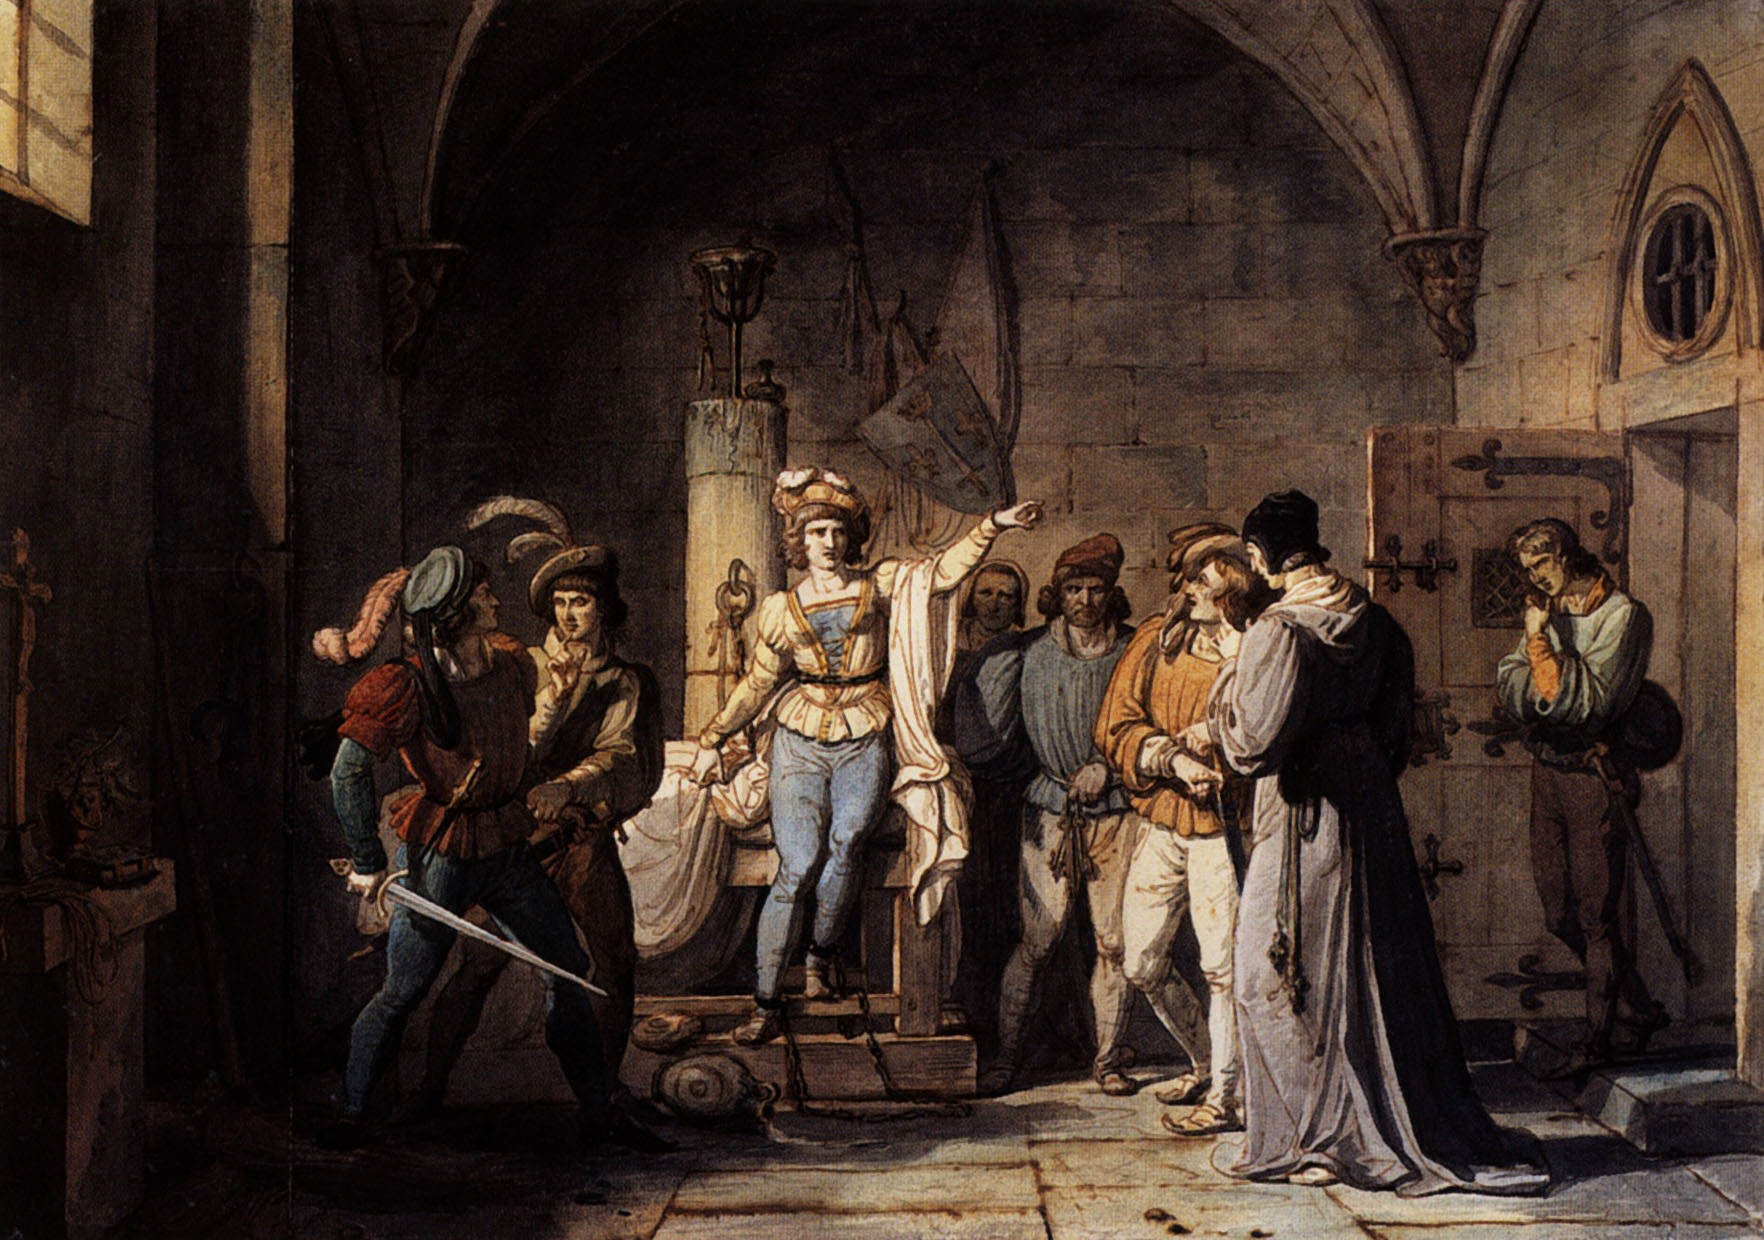 Анри Ревойл. "Заключение Жанны д'Арк под стражу в Руане". 1819.